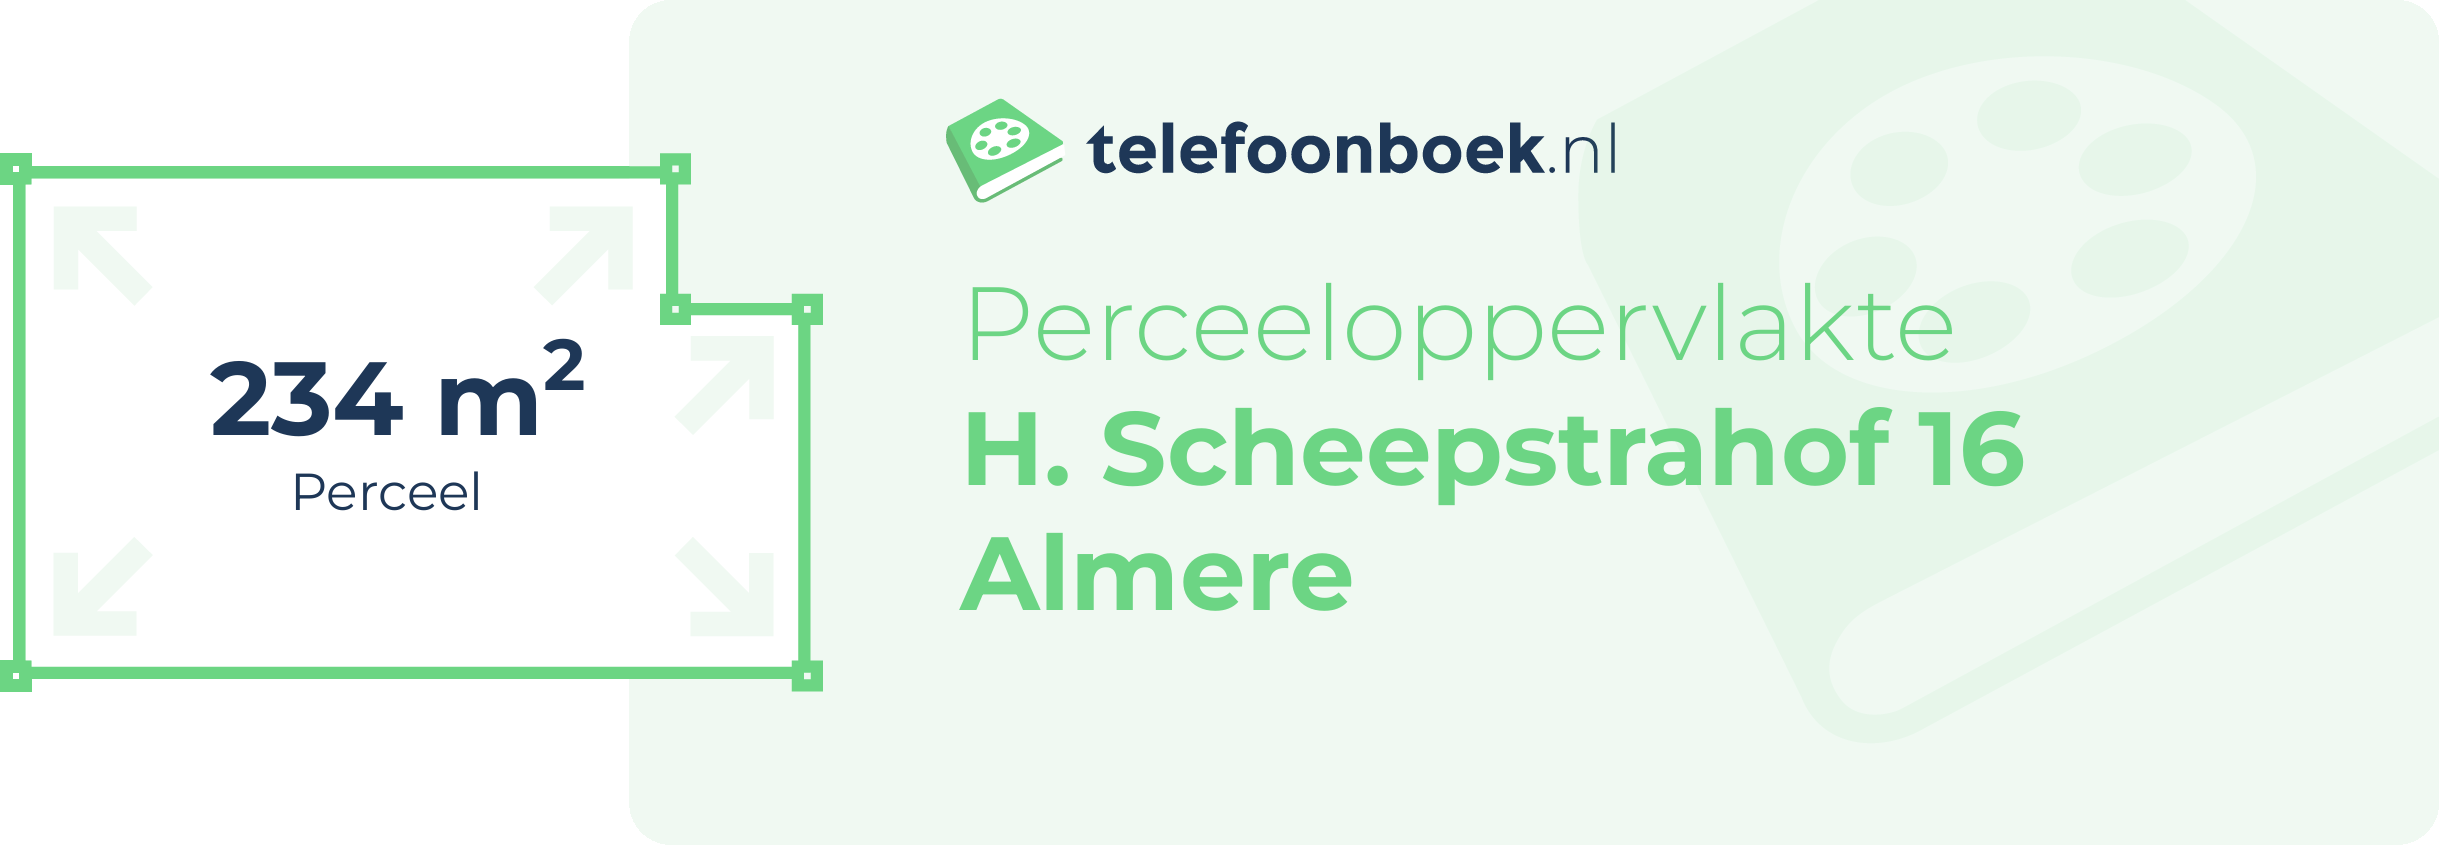 Perceeloppervlakte H. Scheepstrahof 16 Almere